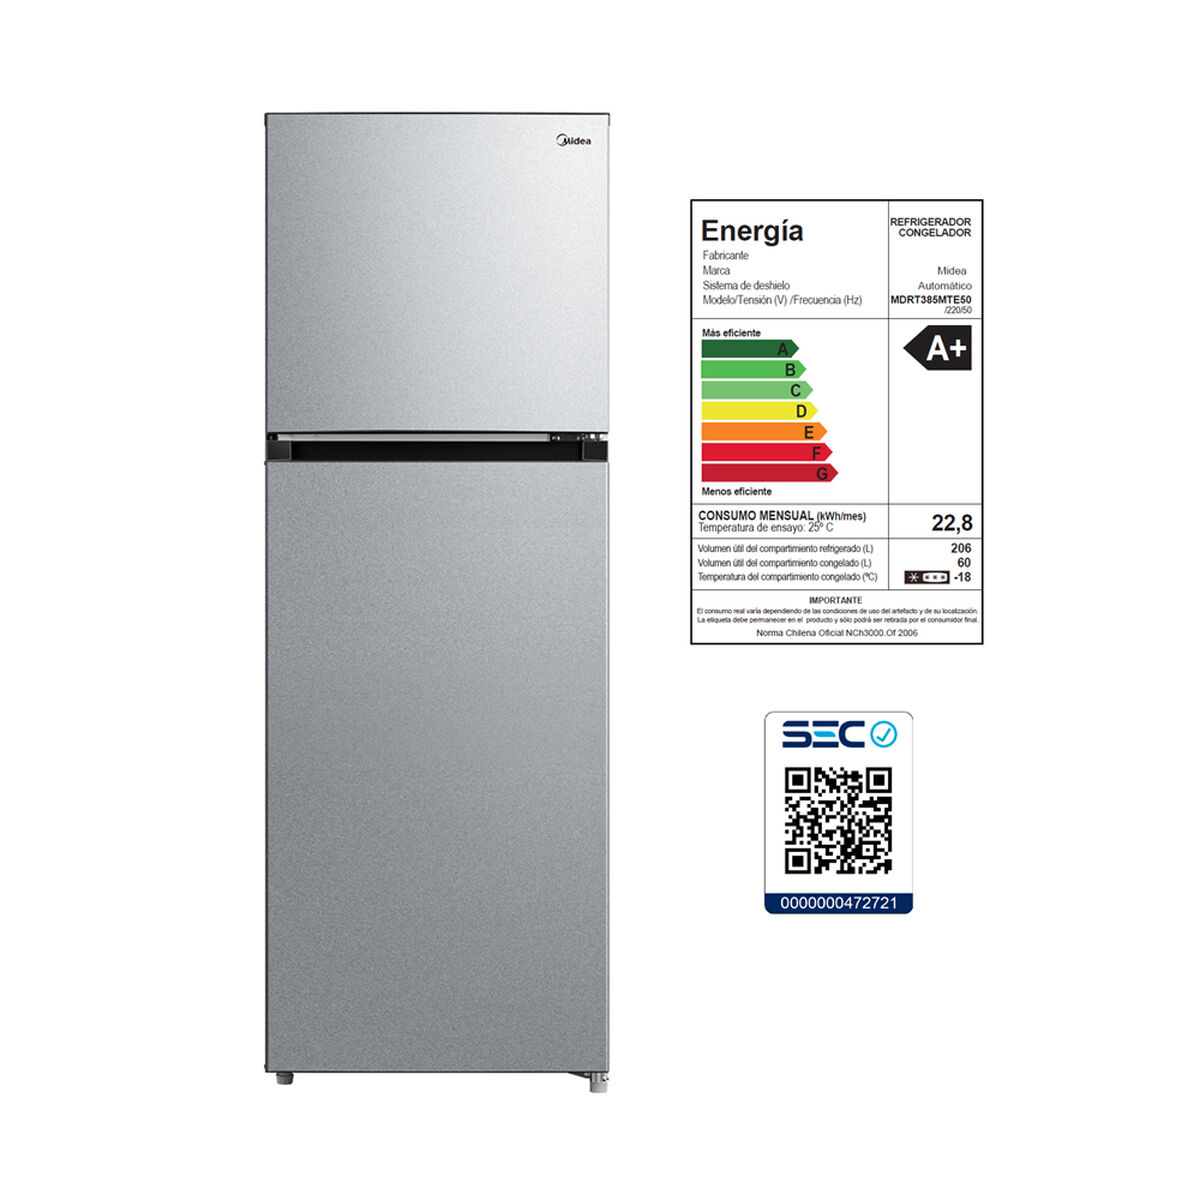 Refrigerador No Frost Midea MDRT385MTE50 266 lts.